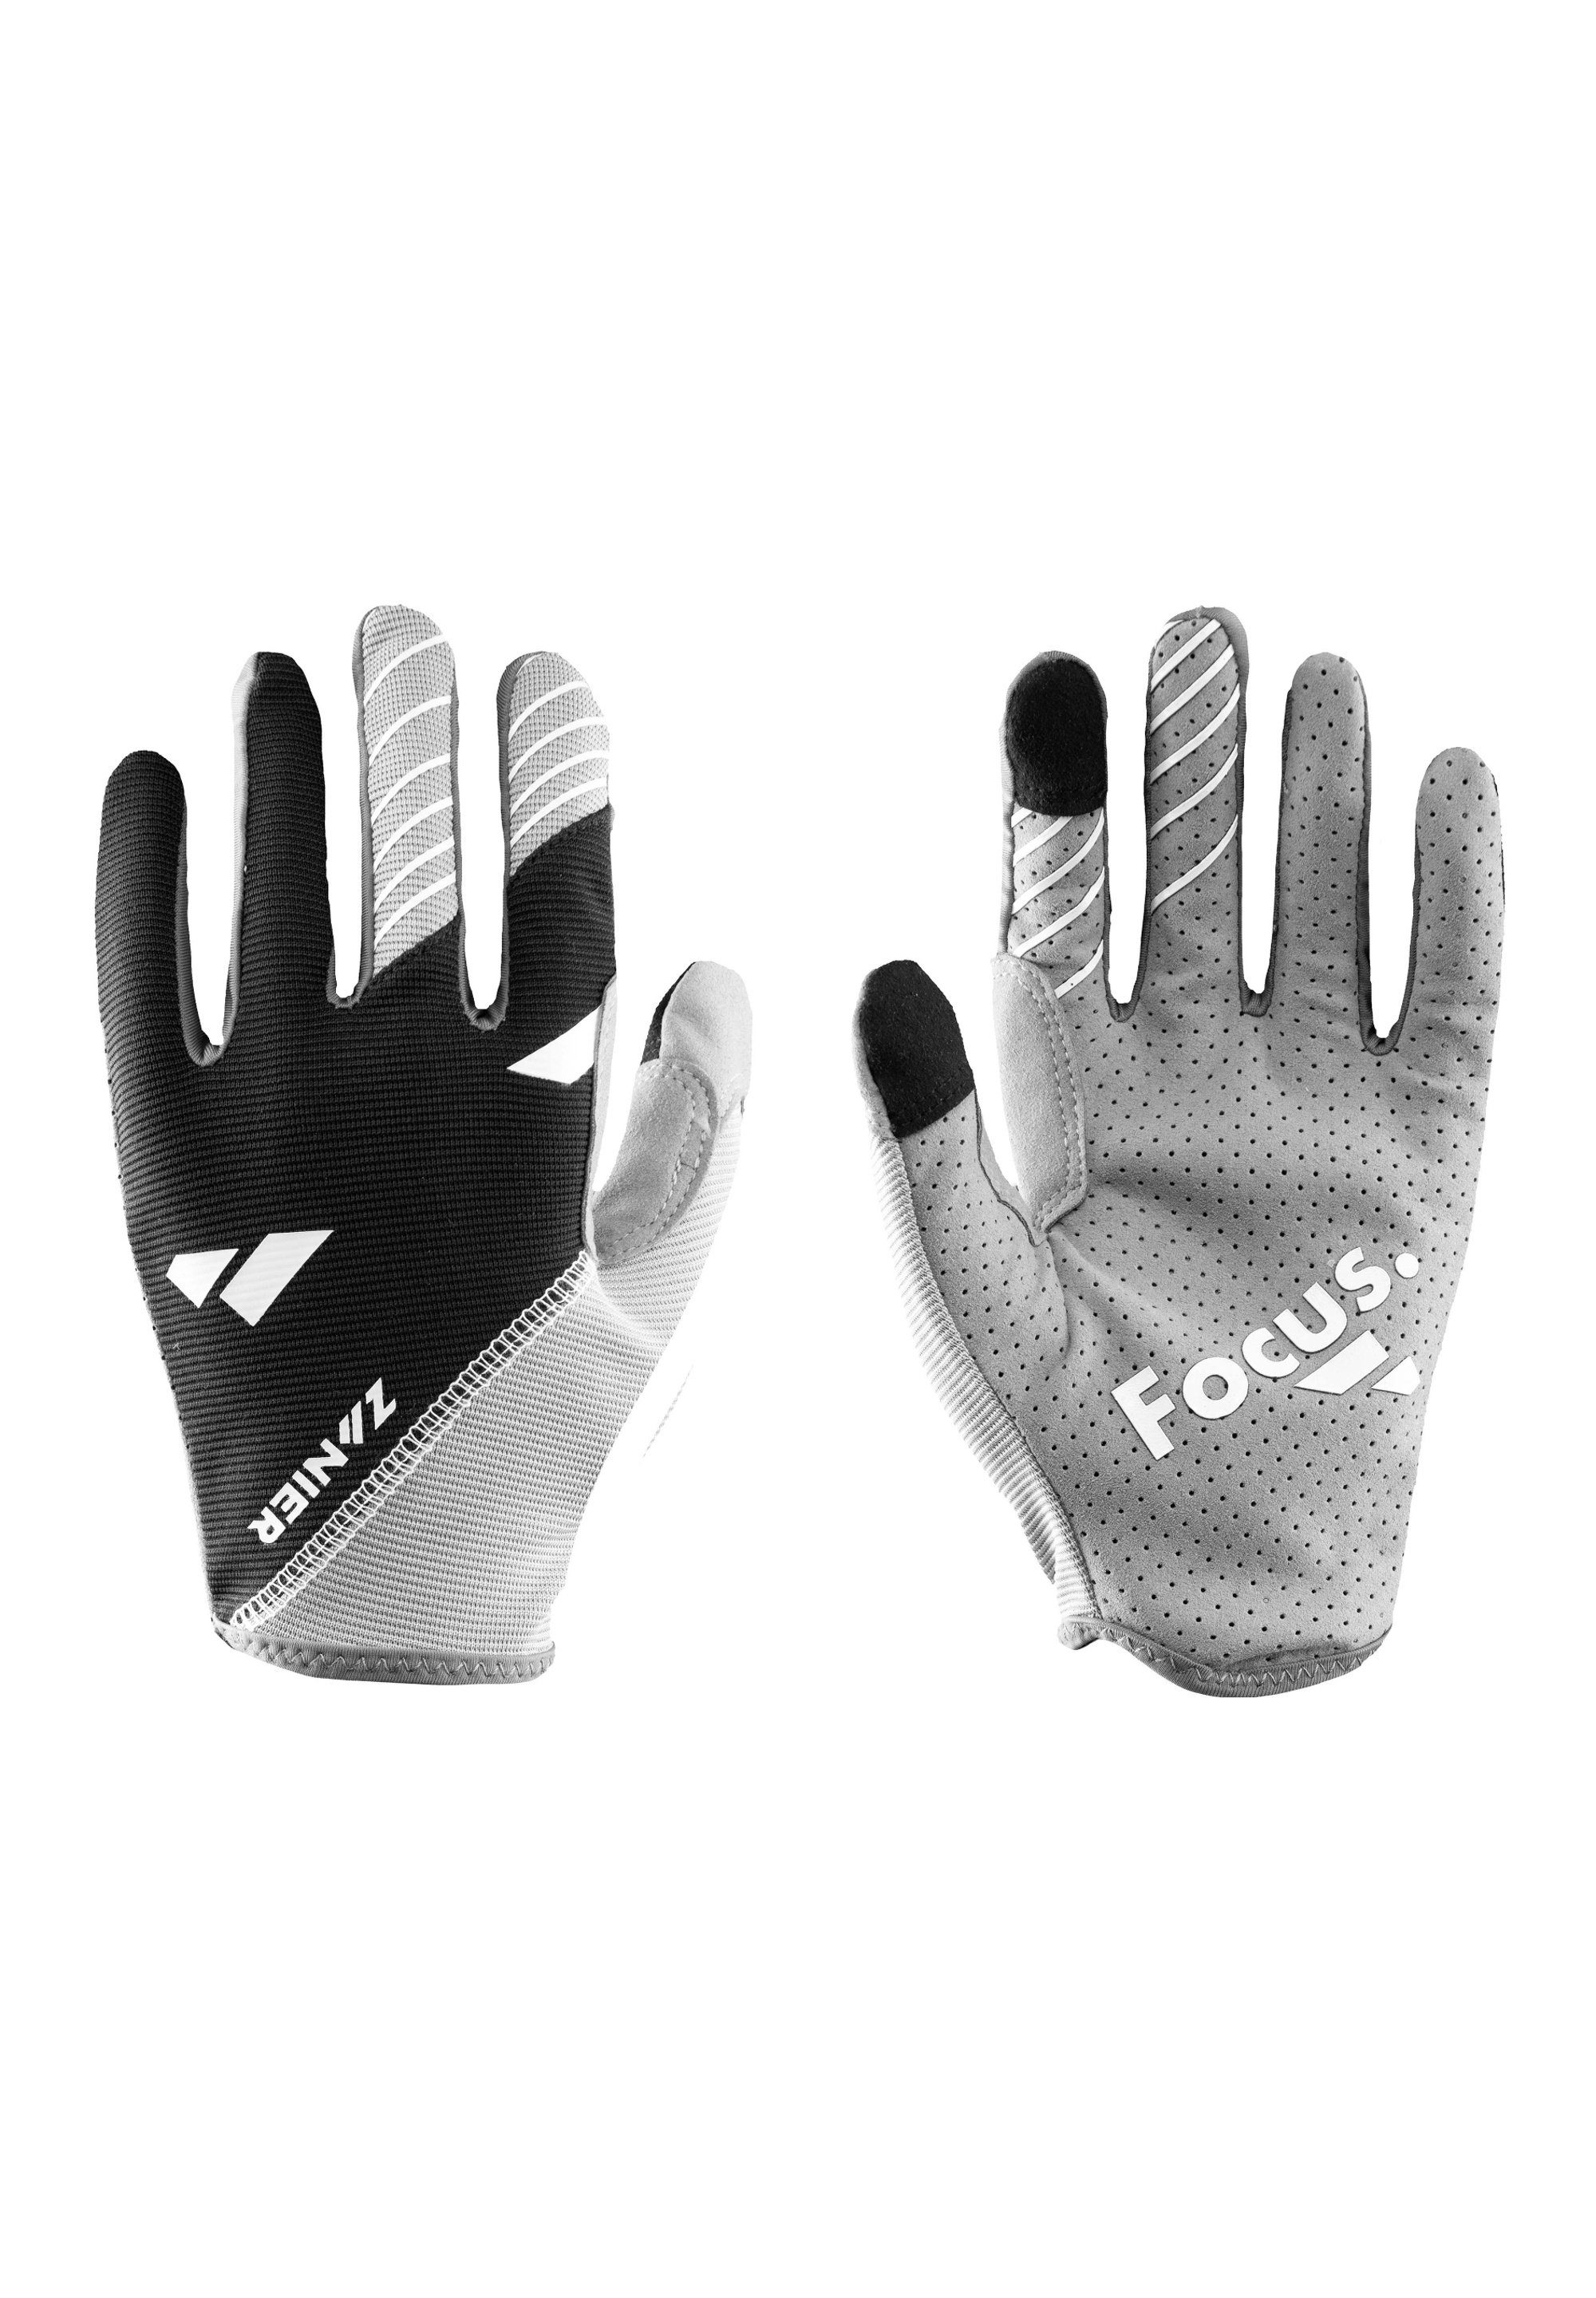 Multisporthandschuhe Co2 produziert, Handschuhe Touch neutral SHREDDER lässige Zanier Griffige